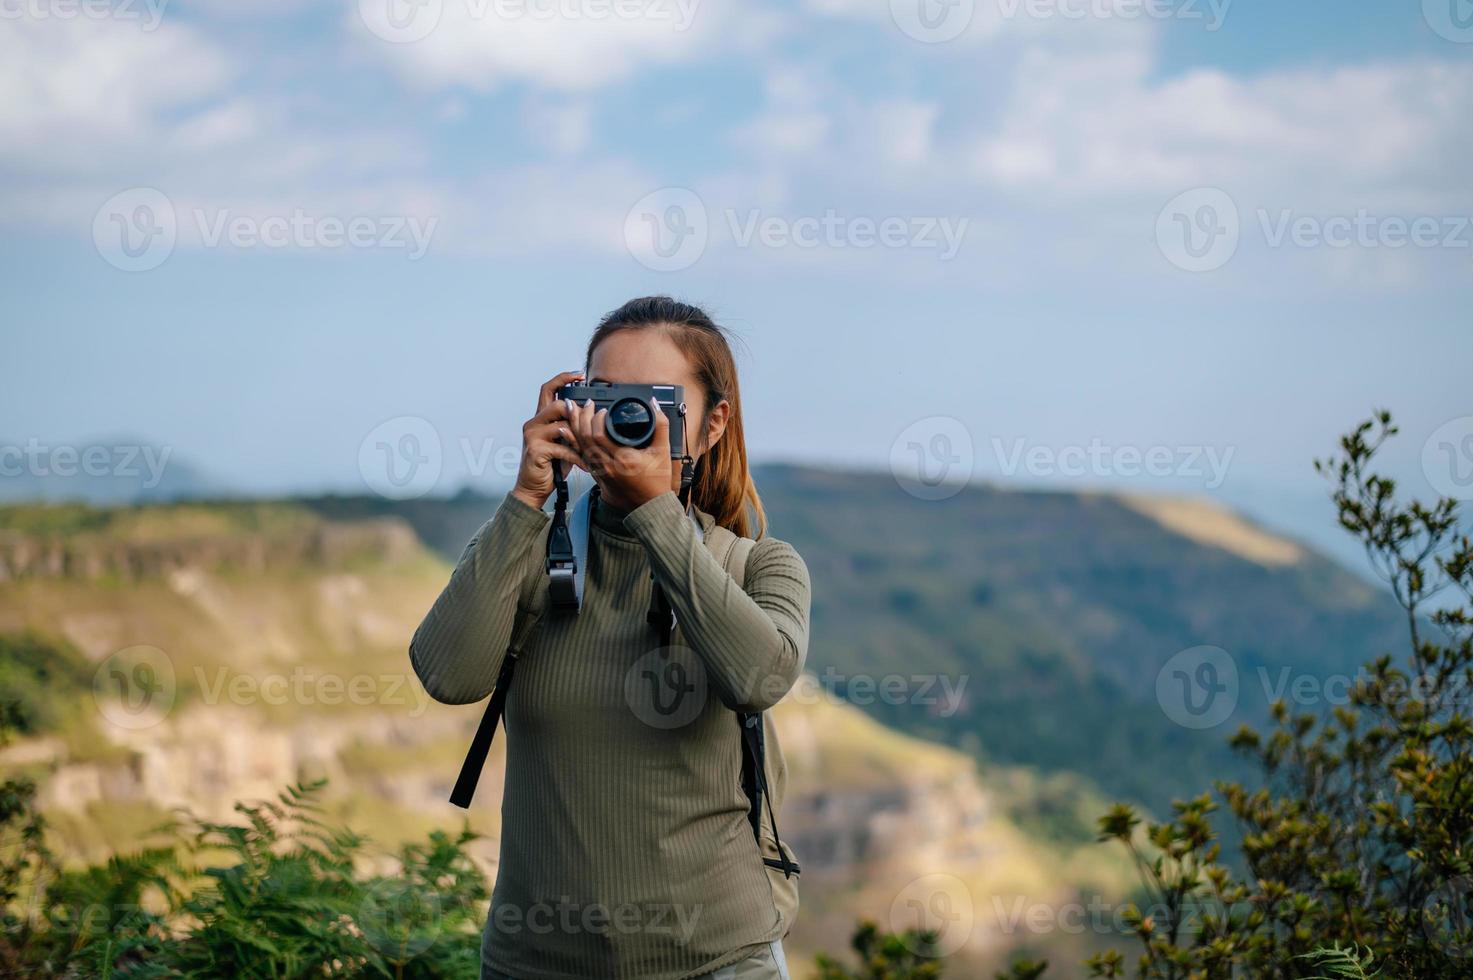 jovem caminhada fêmea usar Câmera fotografia em rochoso montanha pico foto